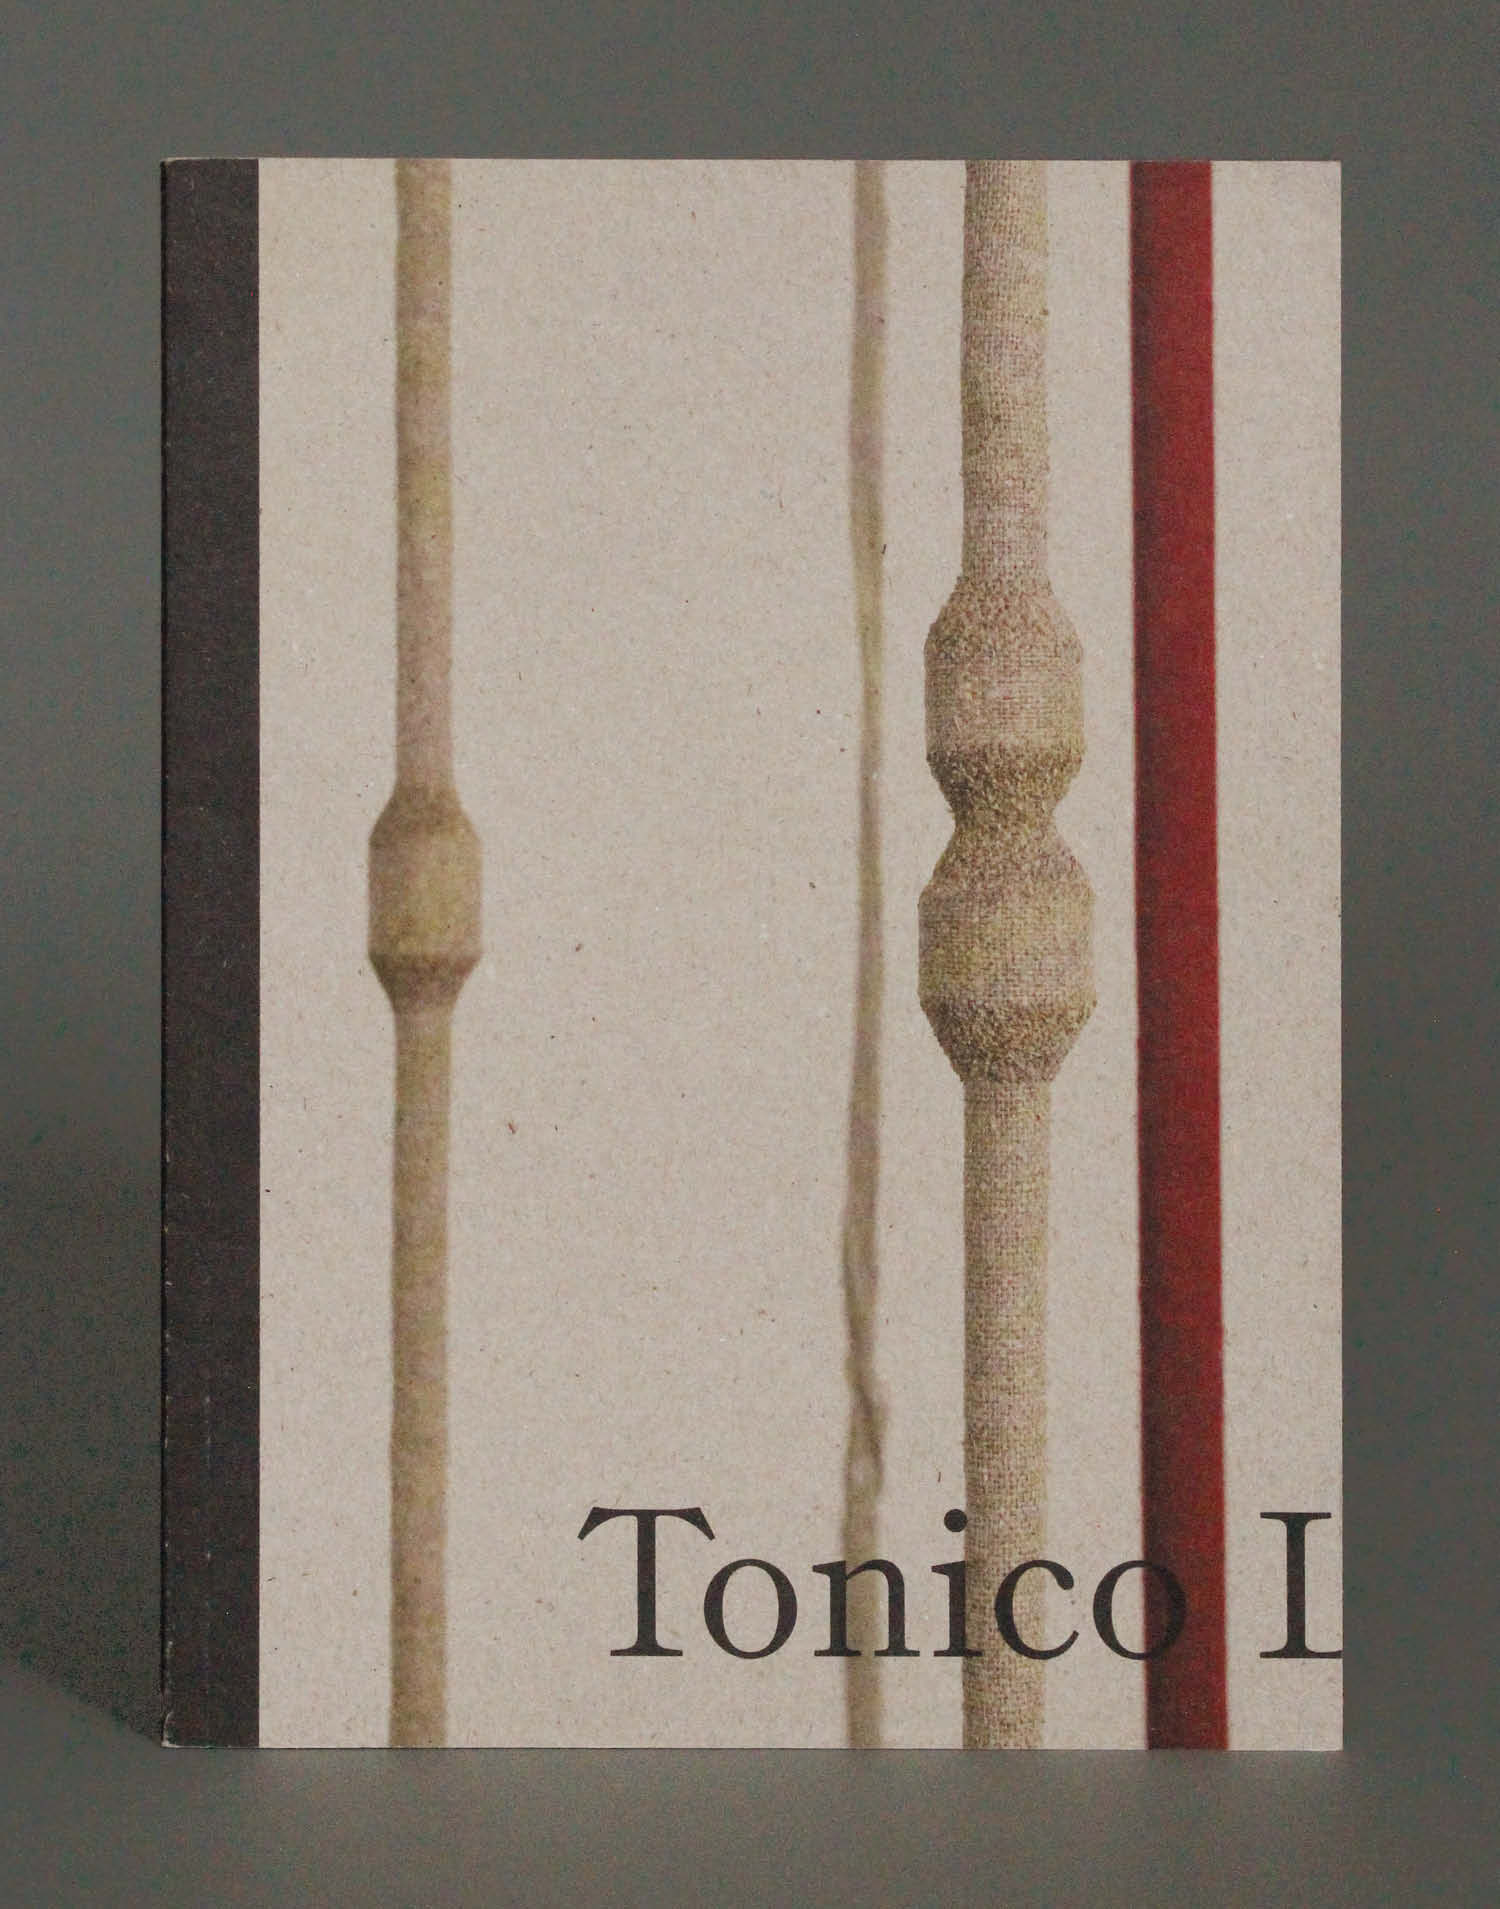 Tonico Lemos Auad, De La Warr Pavilion exhibition catalogue